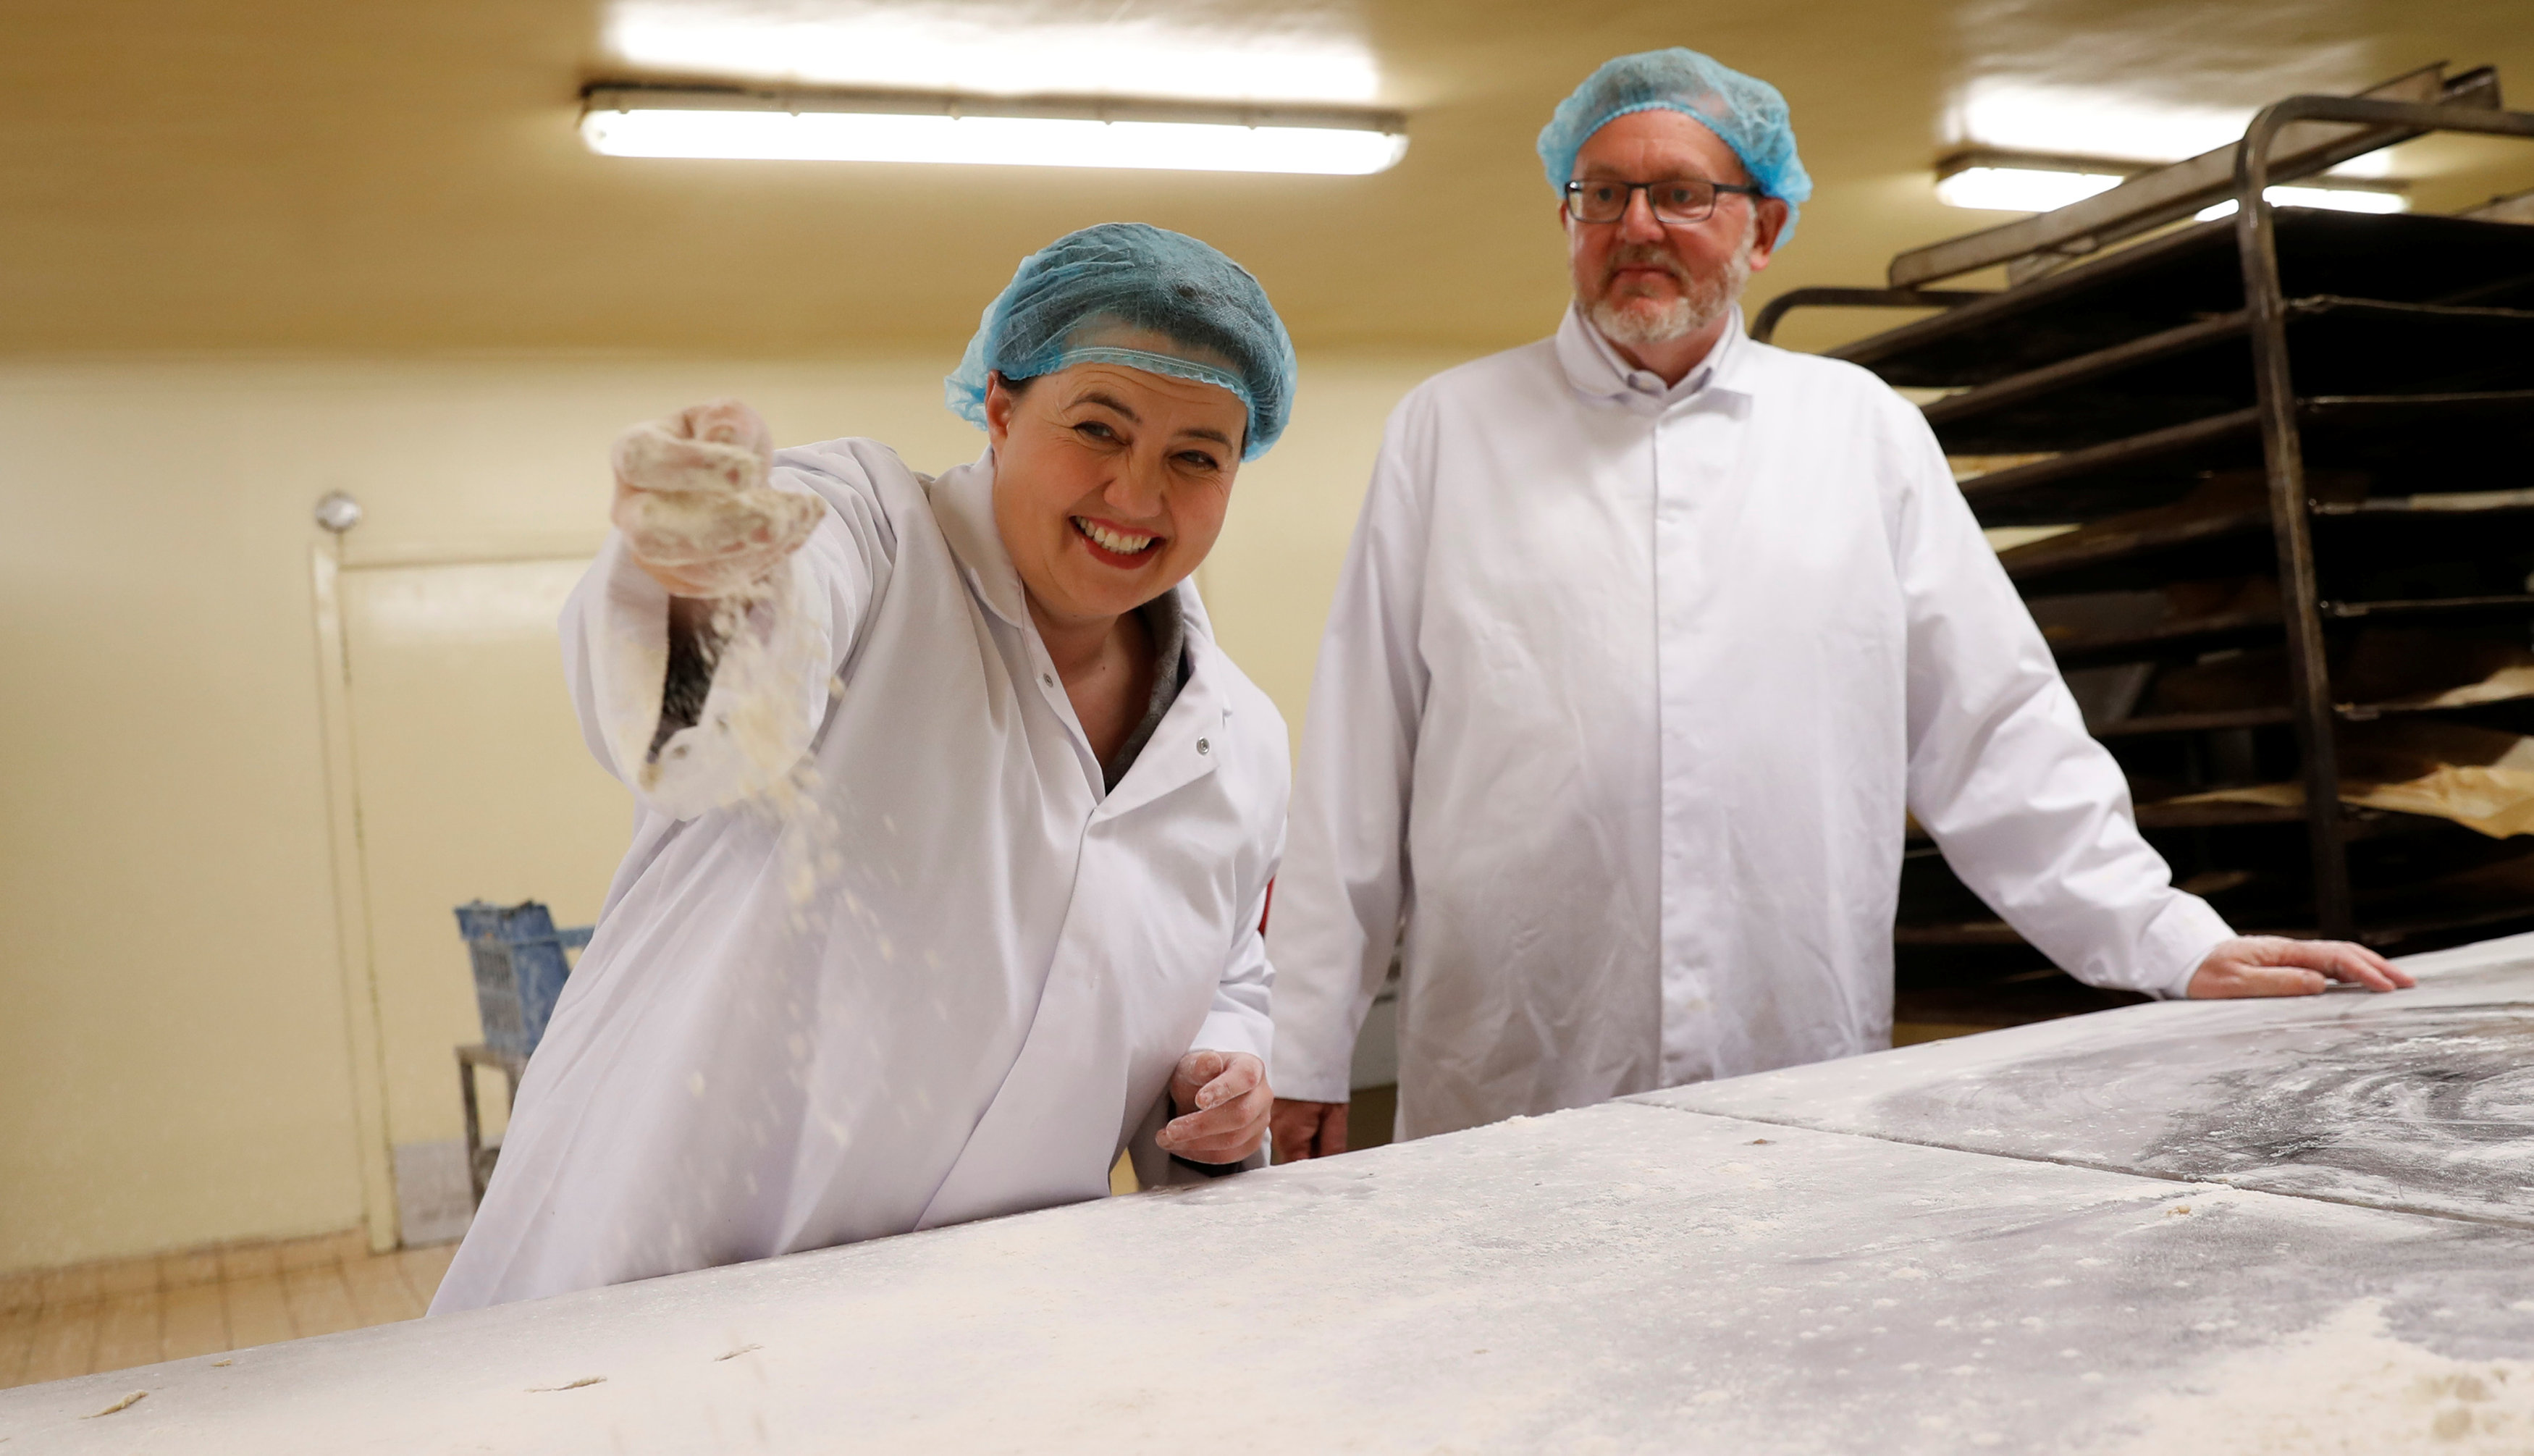 قيادية محافظة اسكتلندية تصنع الكعك خلال جولة انتخابية